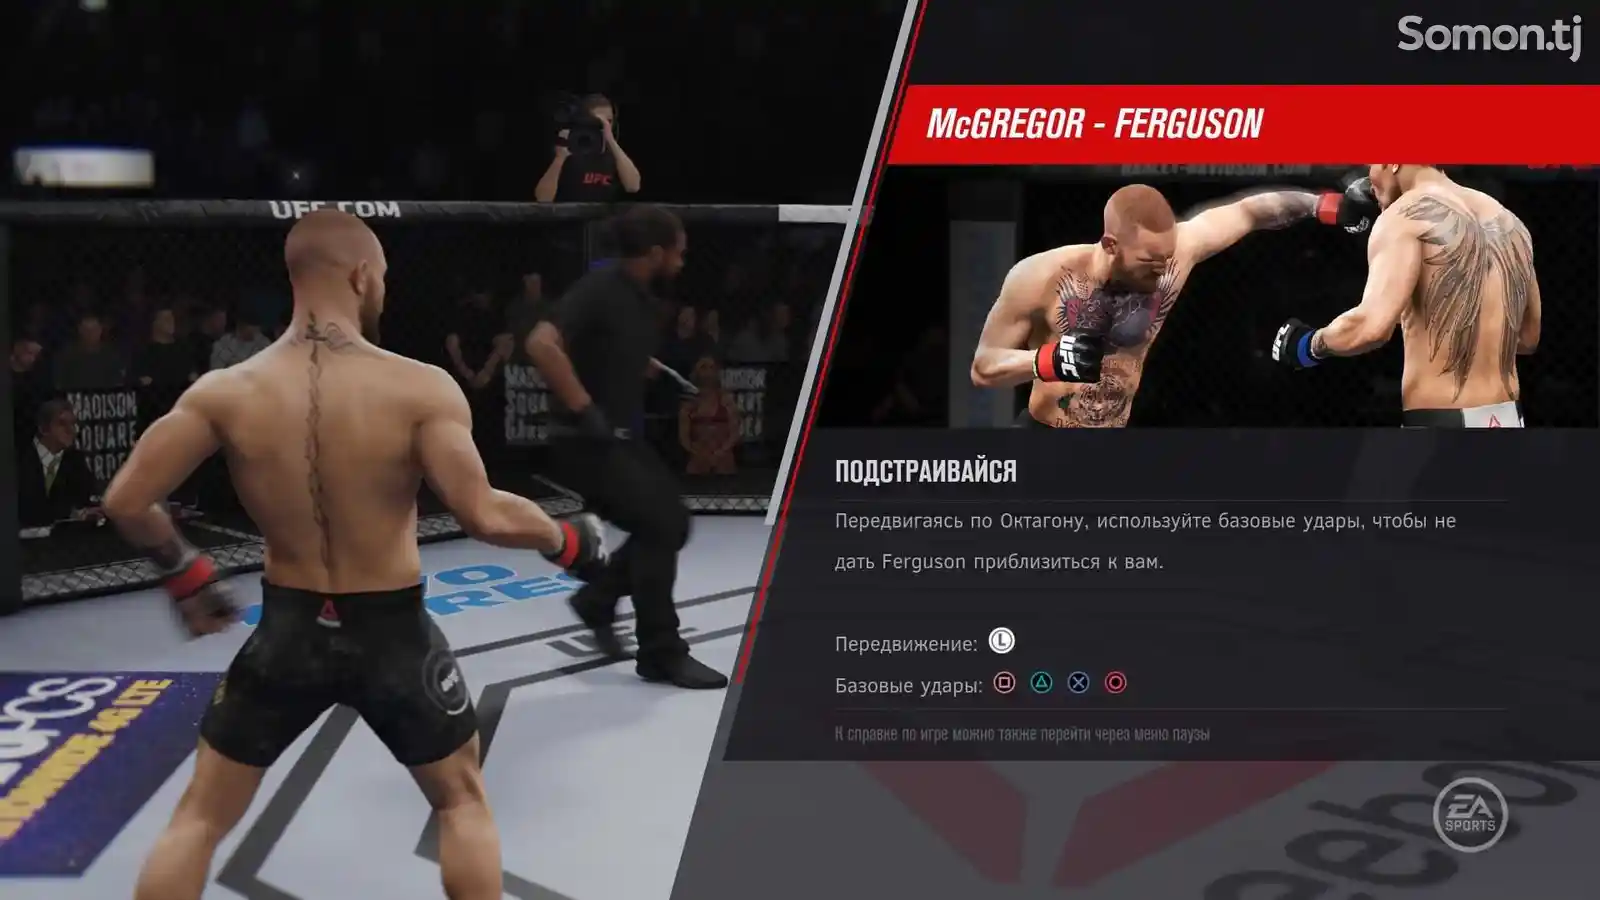 Игра EA Sports UFC 3 Обновленная Версия игры 01.14 для PS4-5